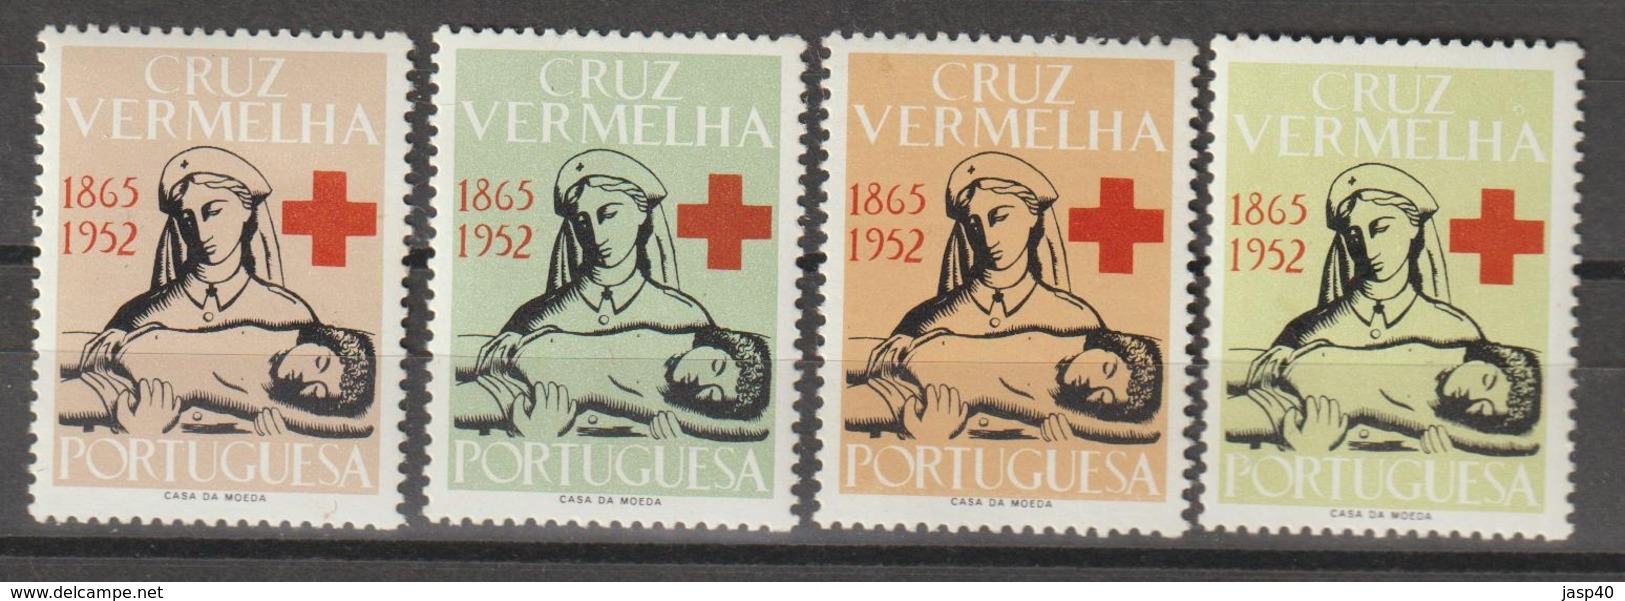 PORTUGAL - CRUZ VERMELHA EMISSÃO DE 1952 - Nuevos